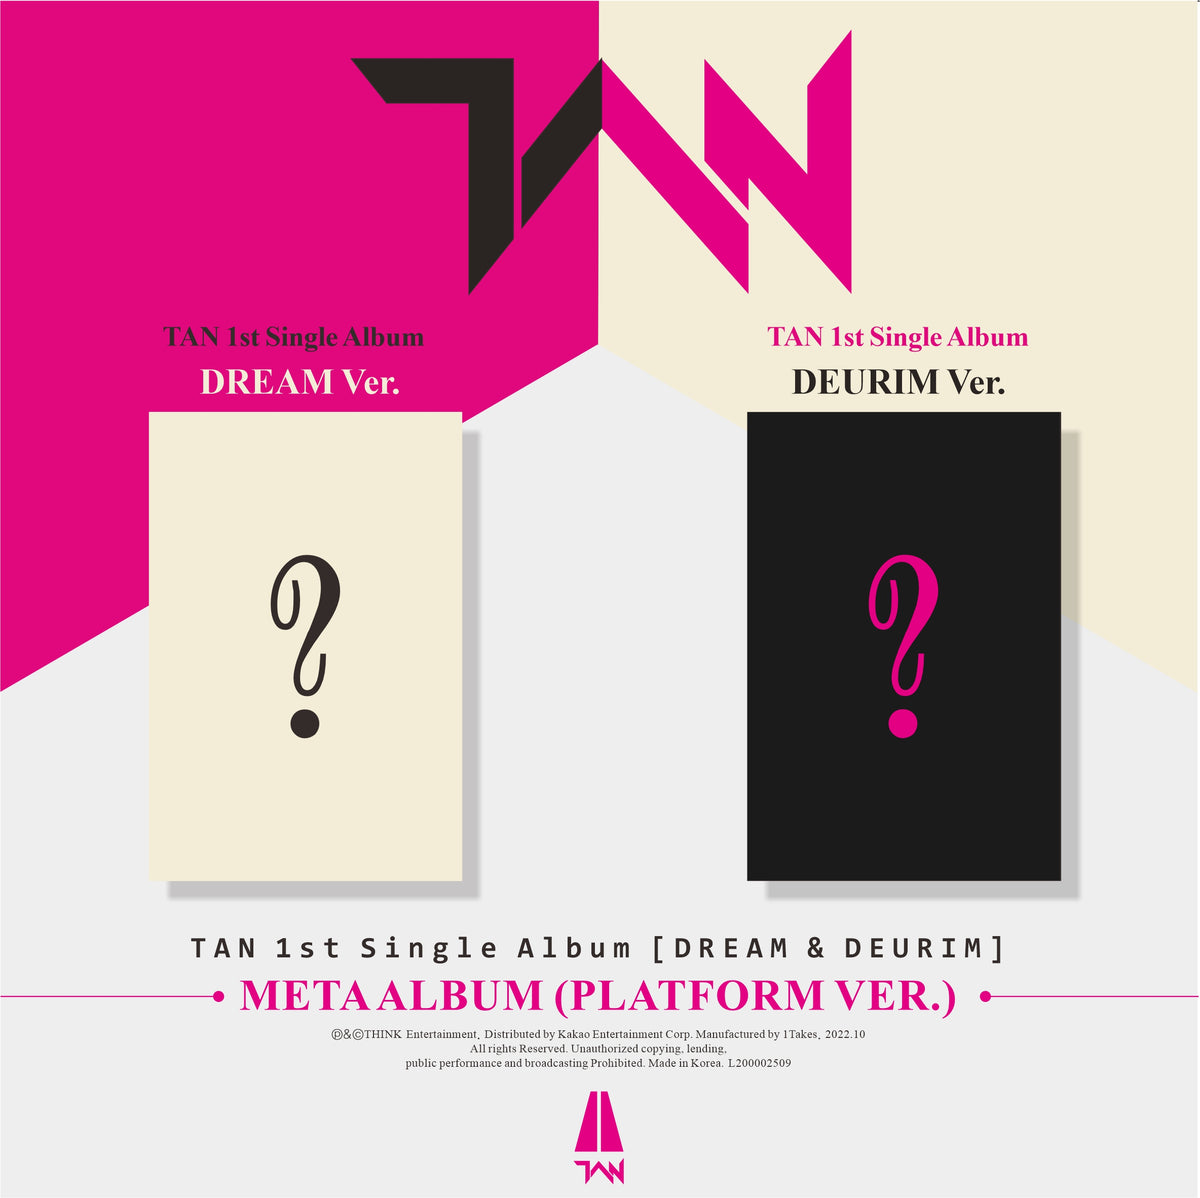 TAN - 1st Single Album [DREAM &amp; DEURIM] (Platform Ver.)